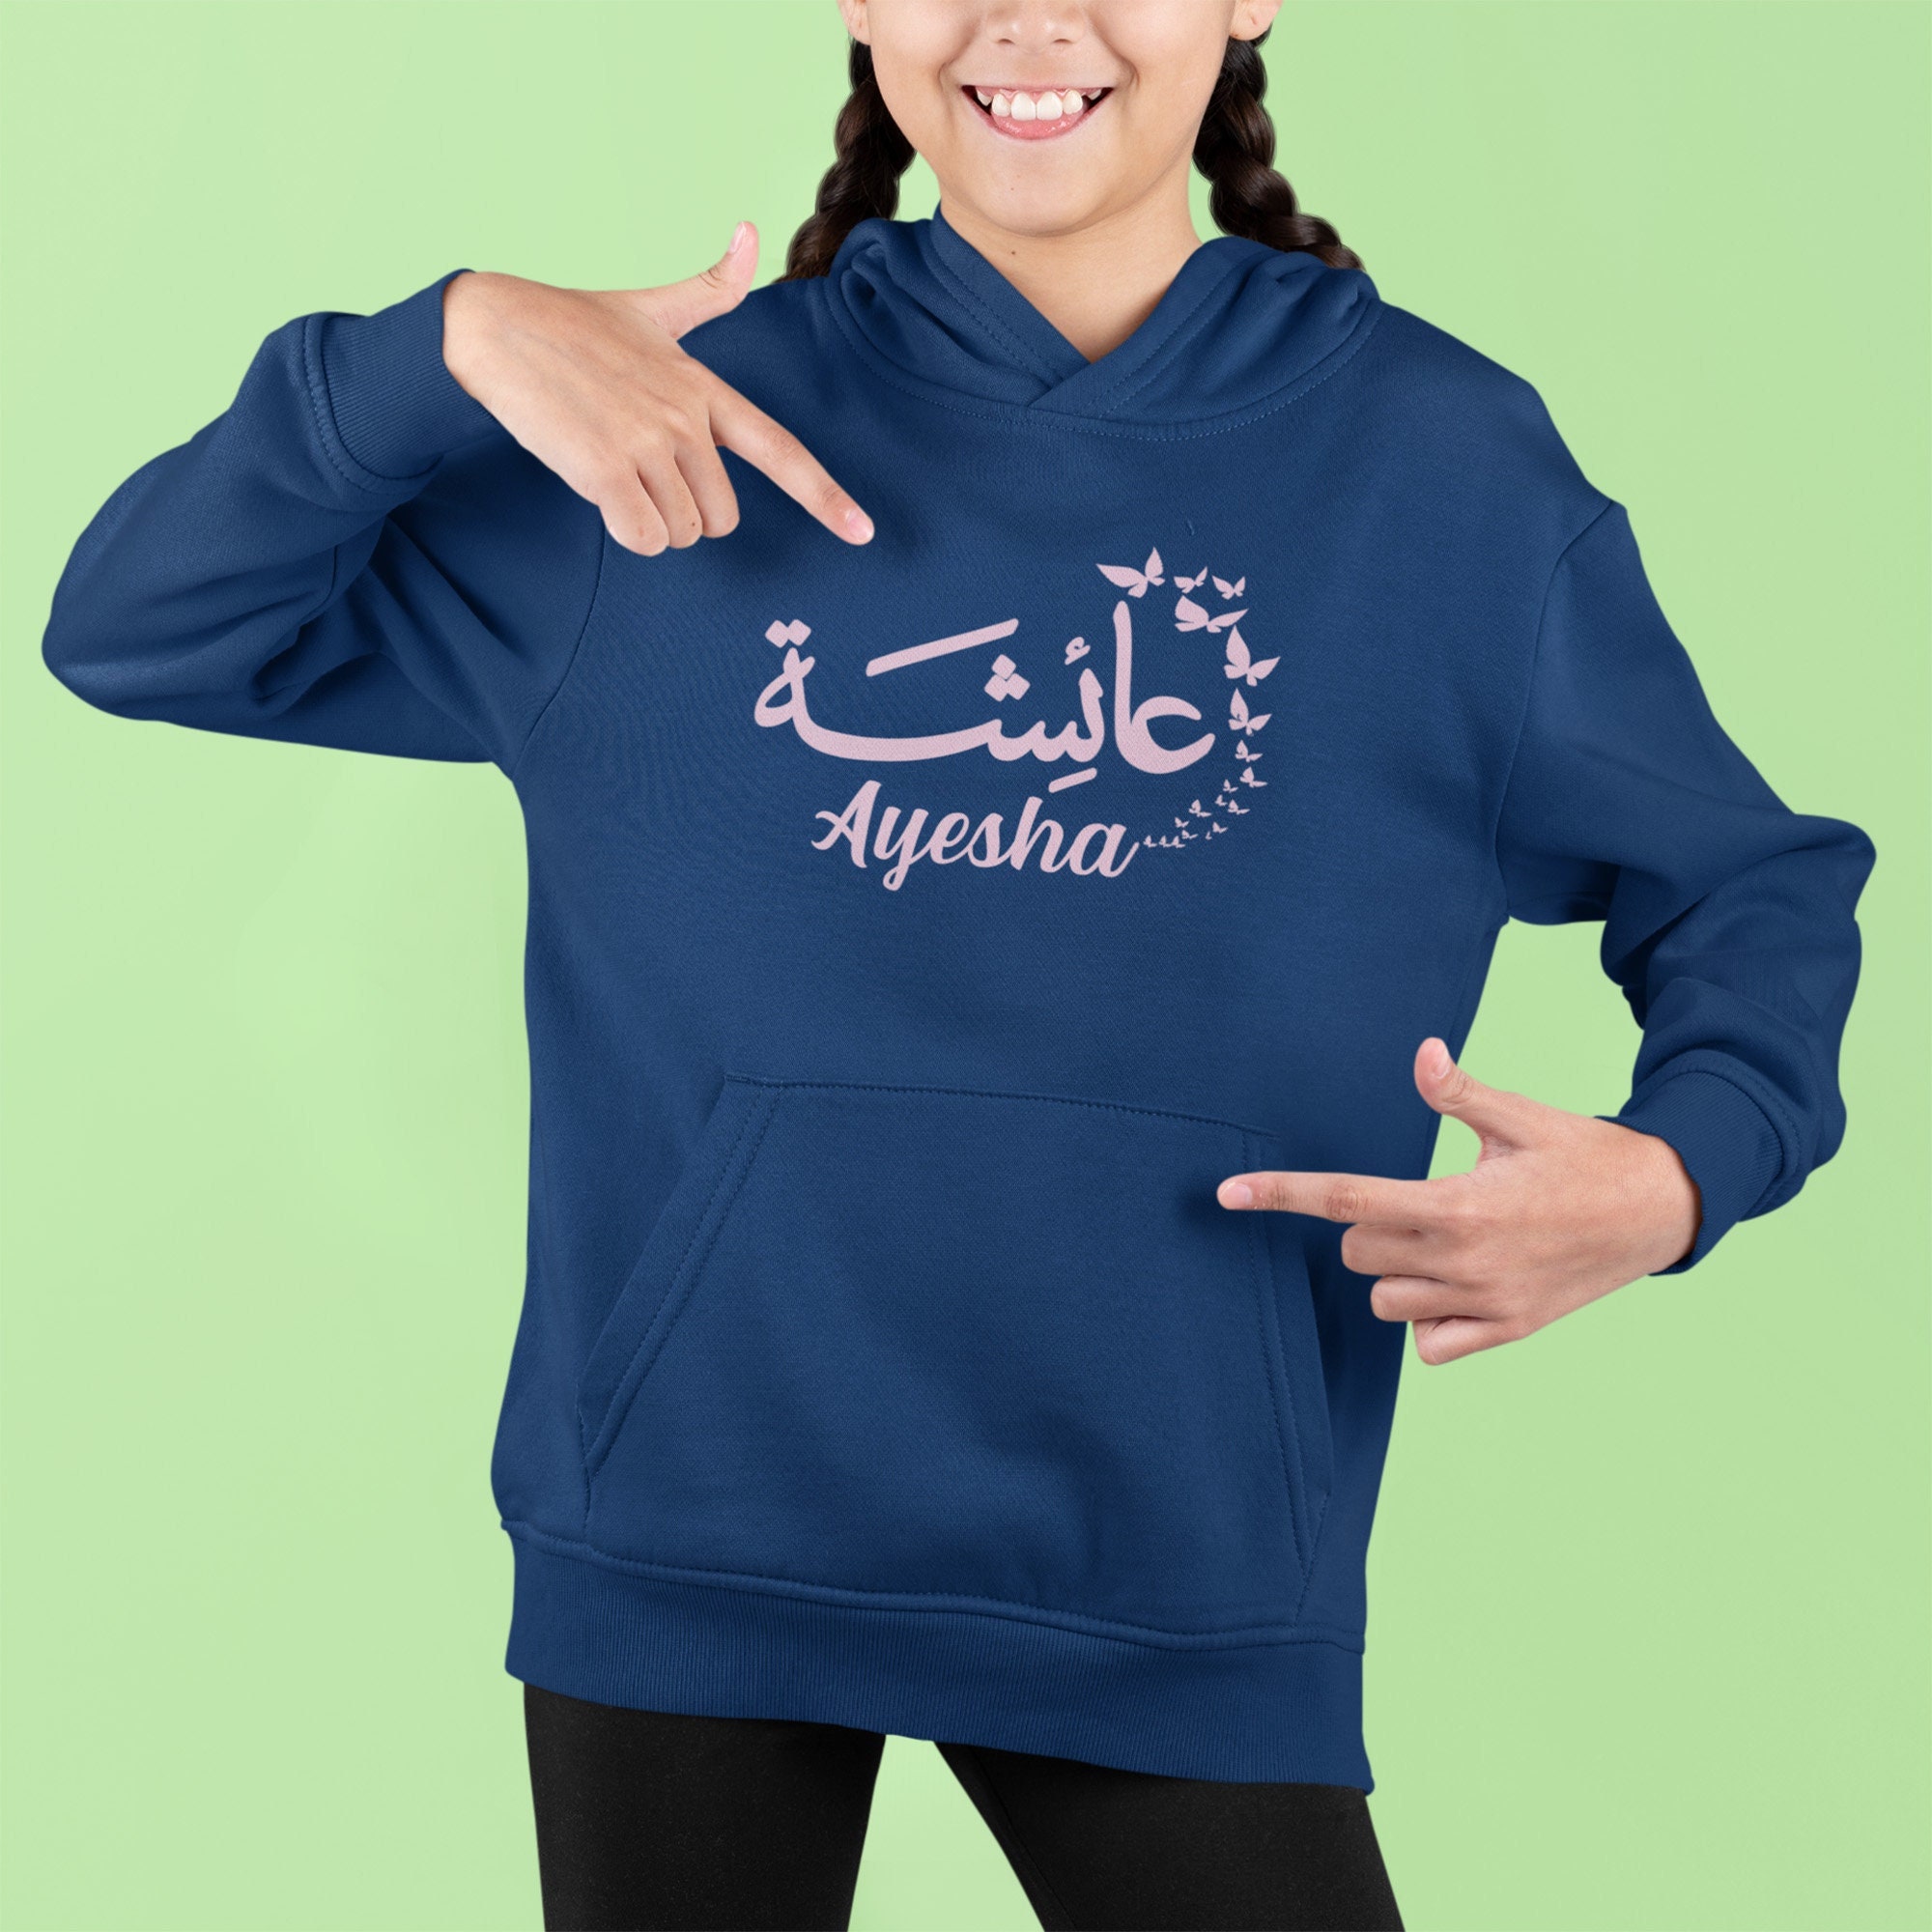 Personalised Hoodie EID GIFT Custom Hoodie Arabic Name Urdu 